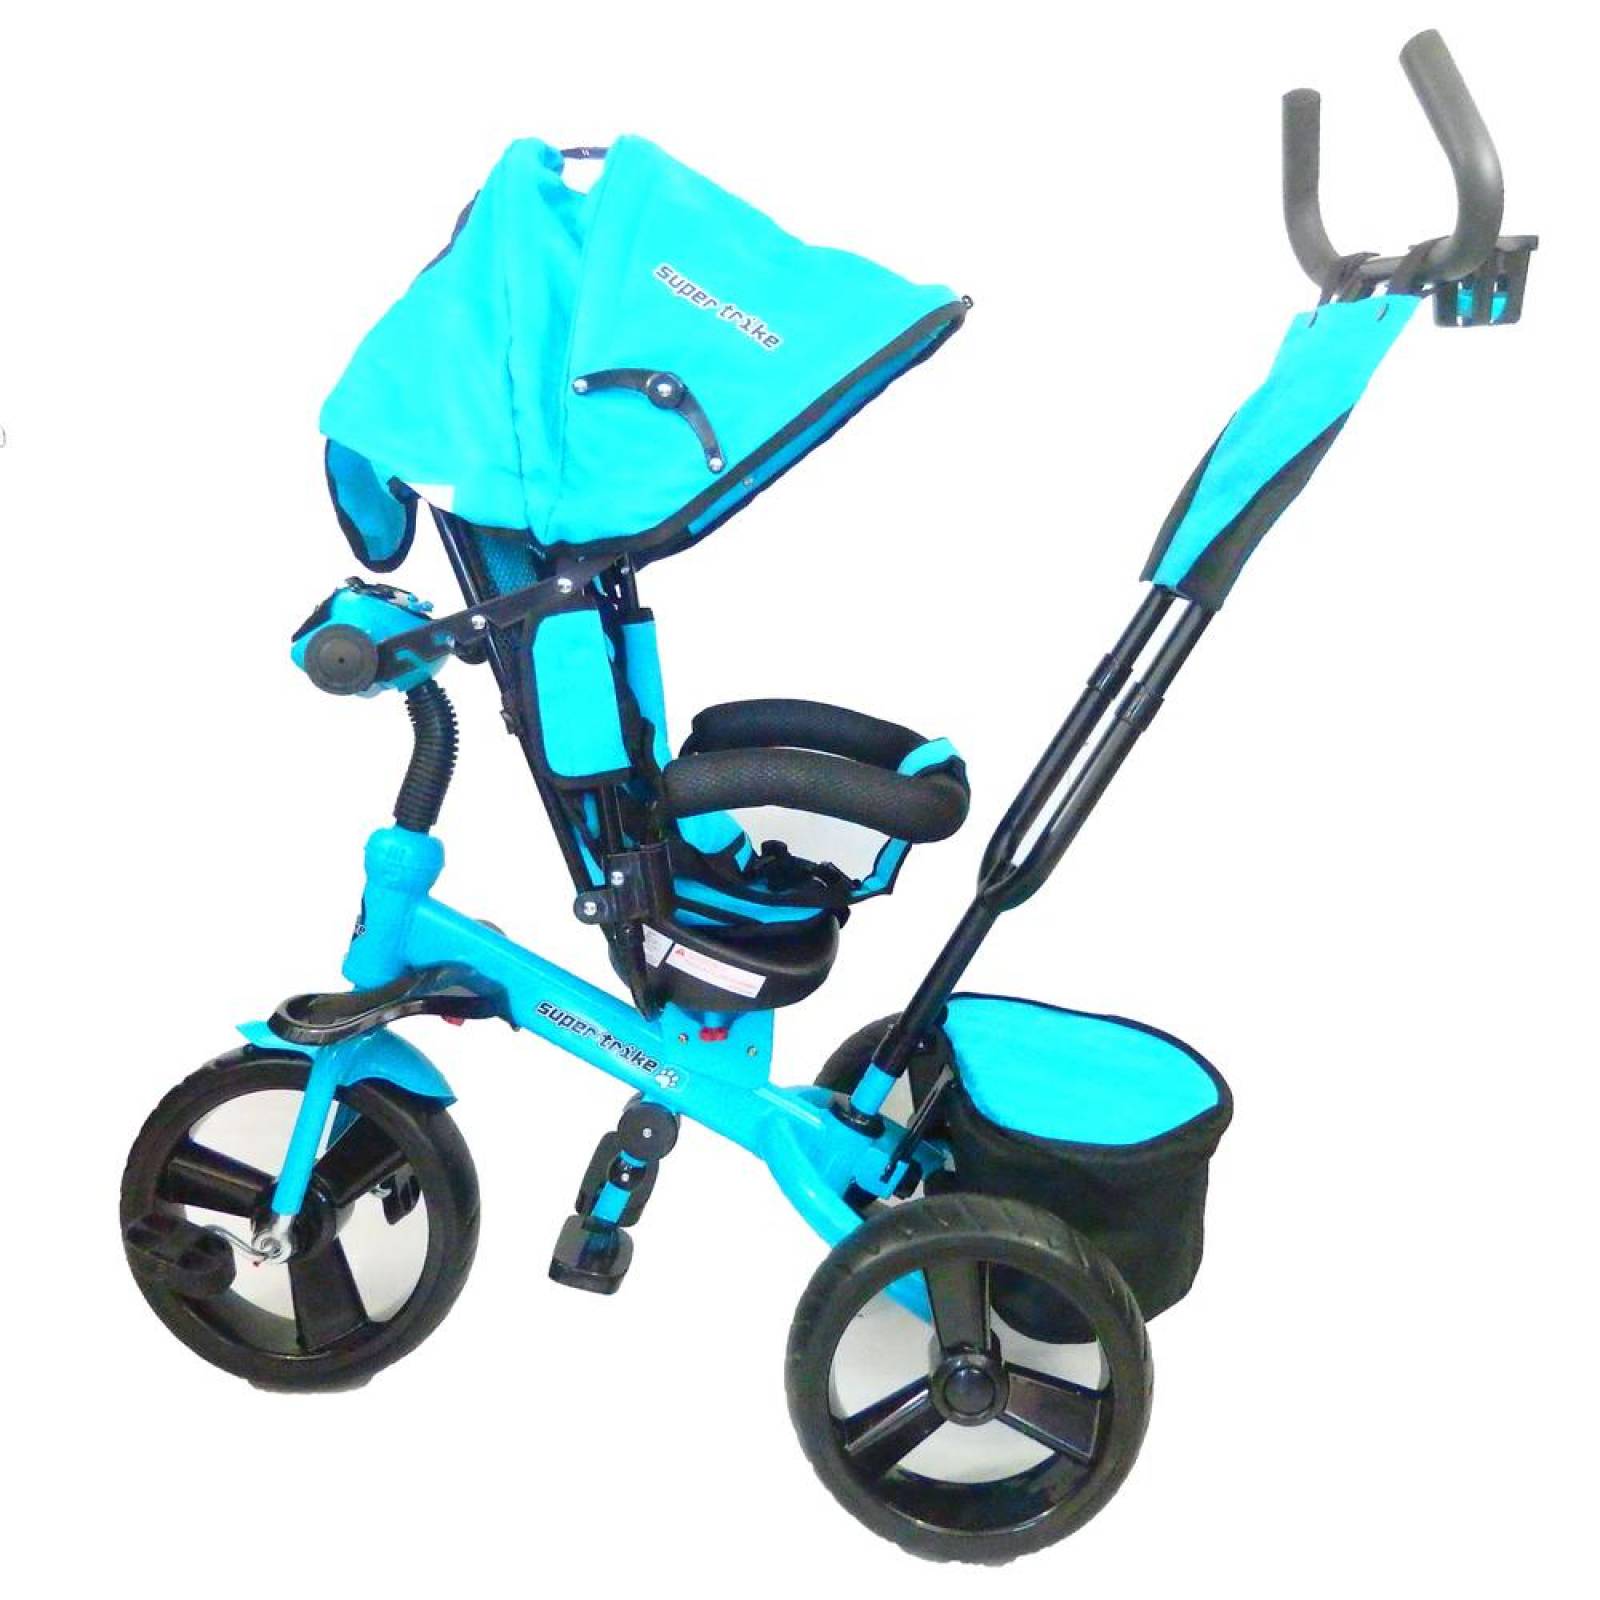 Triciclo para Bebe Niños 6 en 1 6 meses a 5 años  - Azul